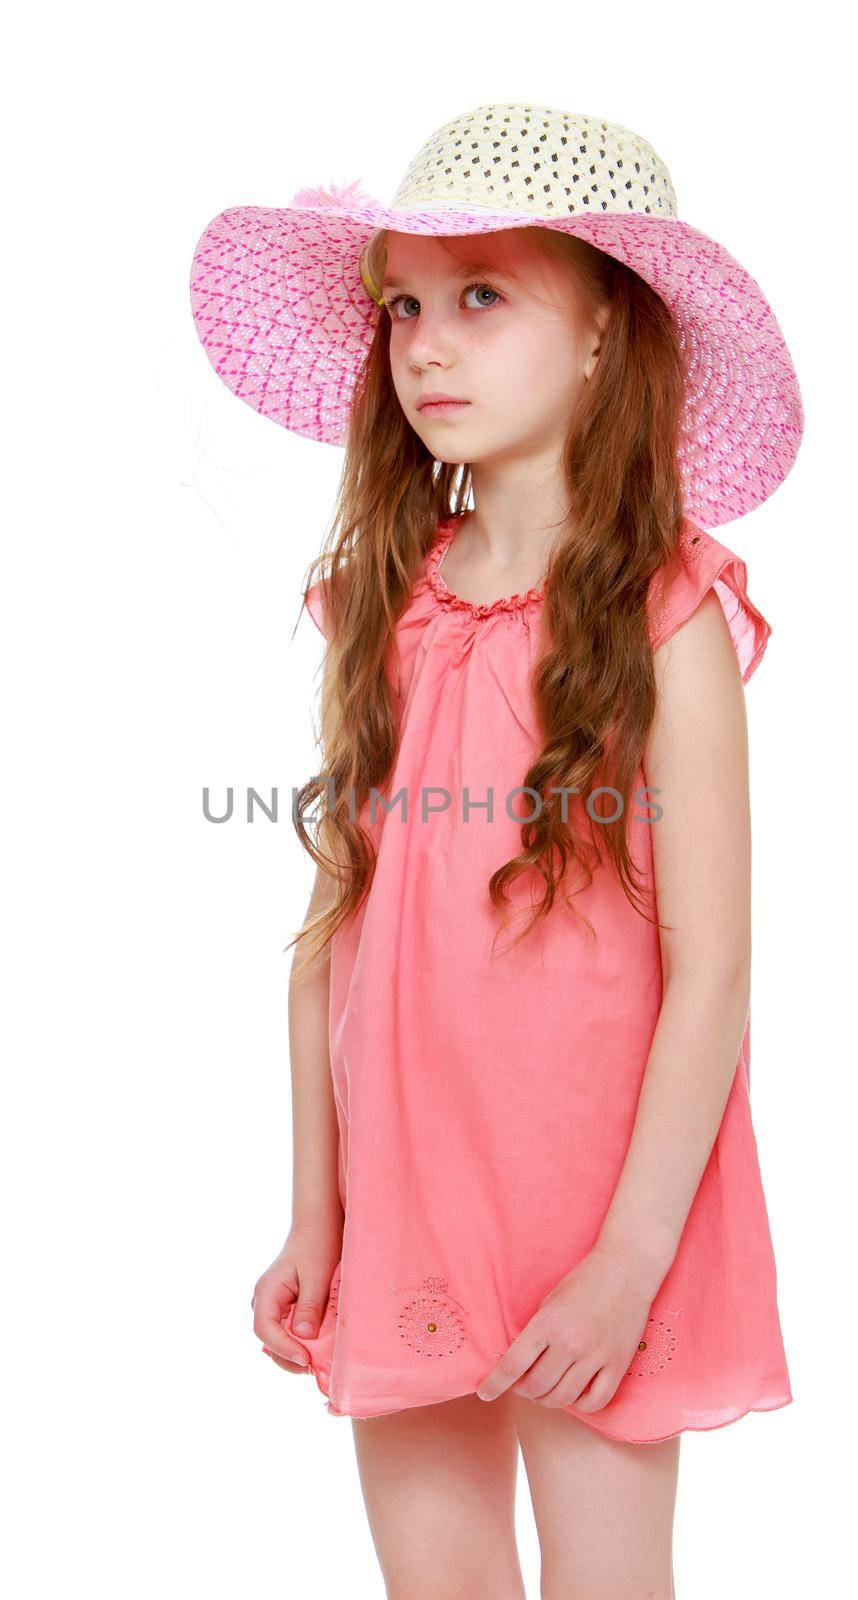 Girl in pink dress by kolesnikov_studio